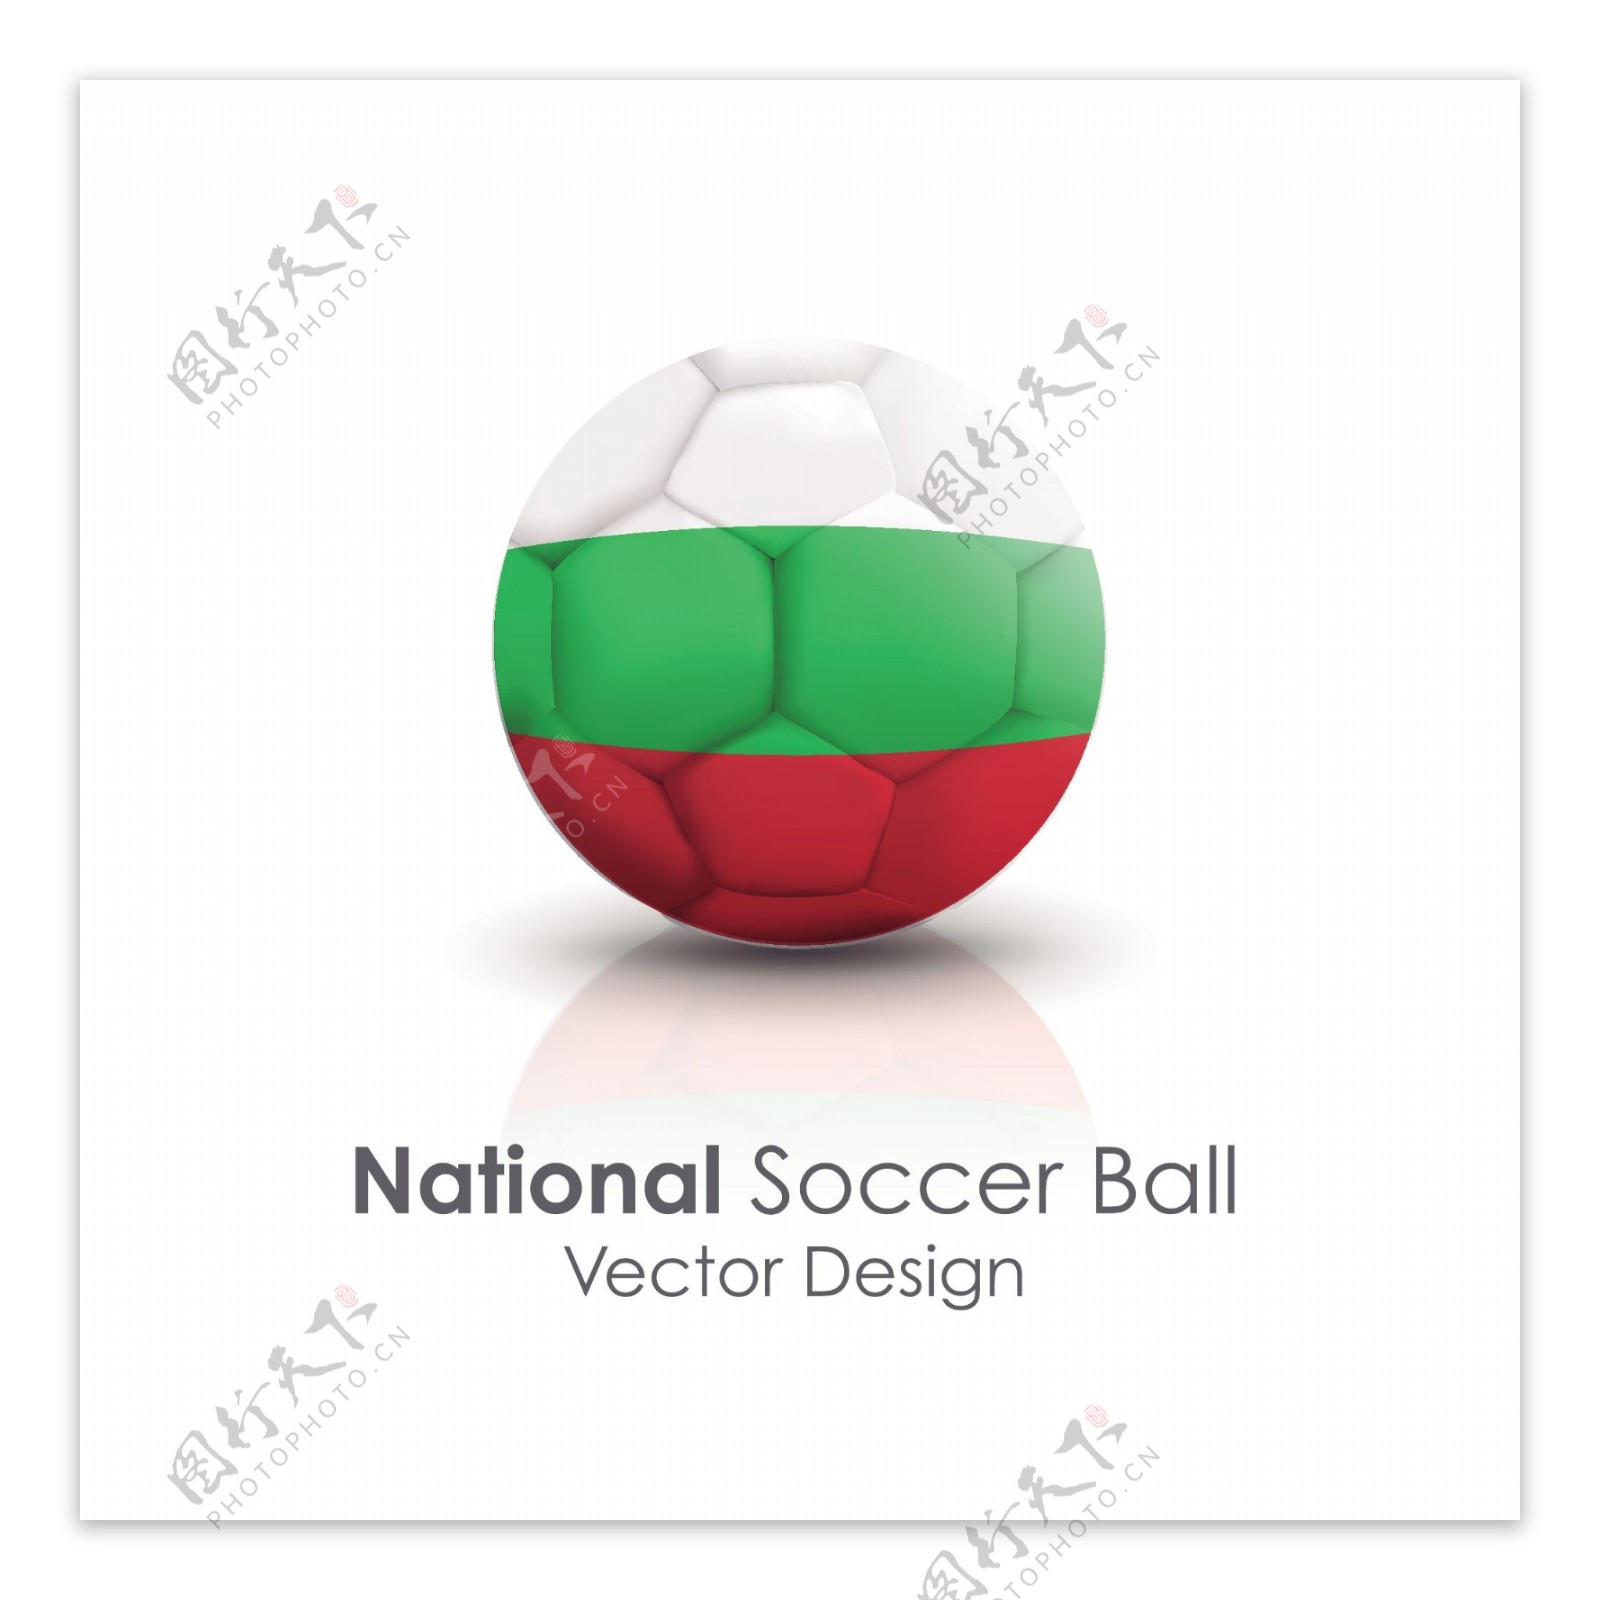 保加利亚国旗足球贴图矢量素材